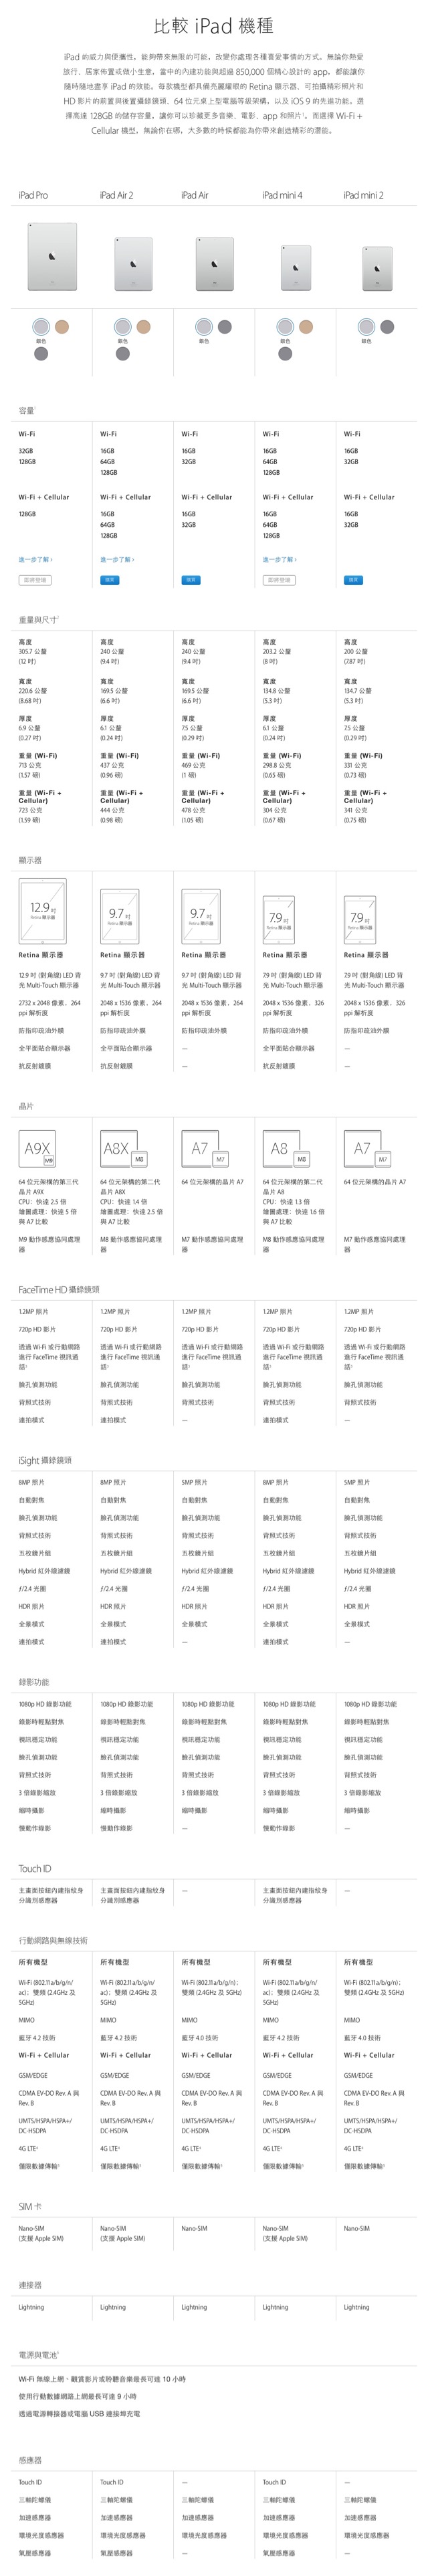 iPad - 比較機種 - Apple (台灣)